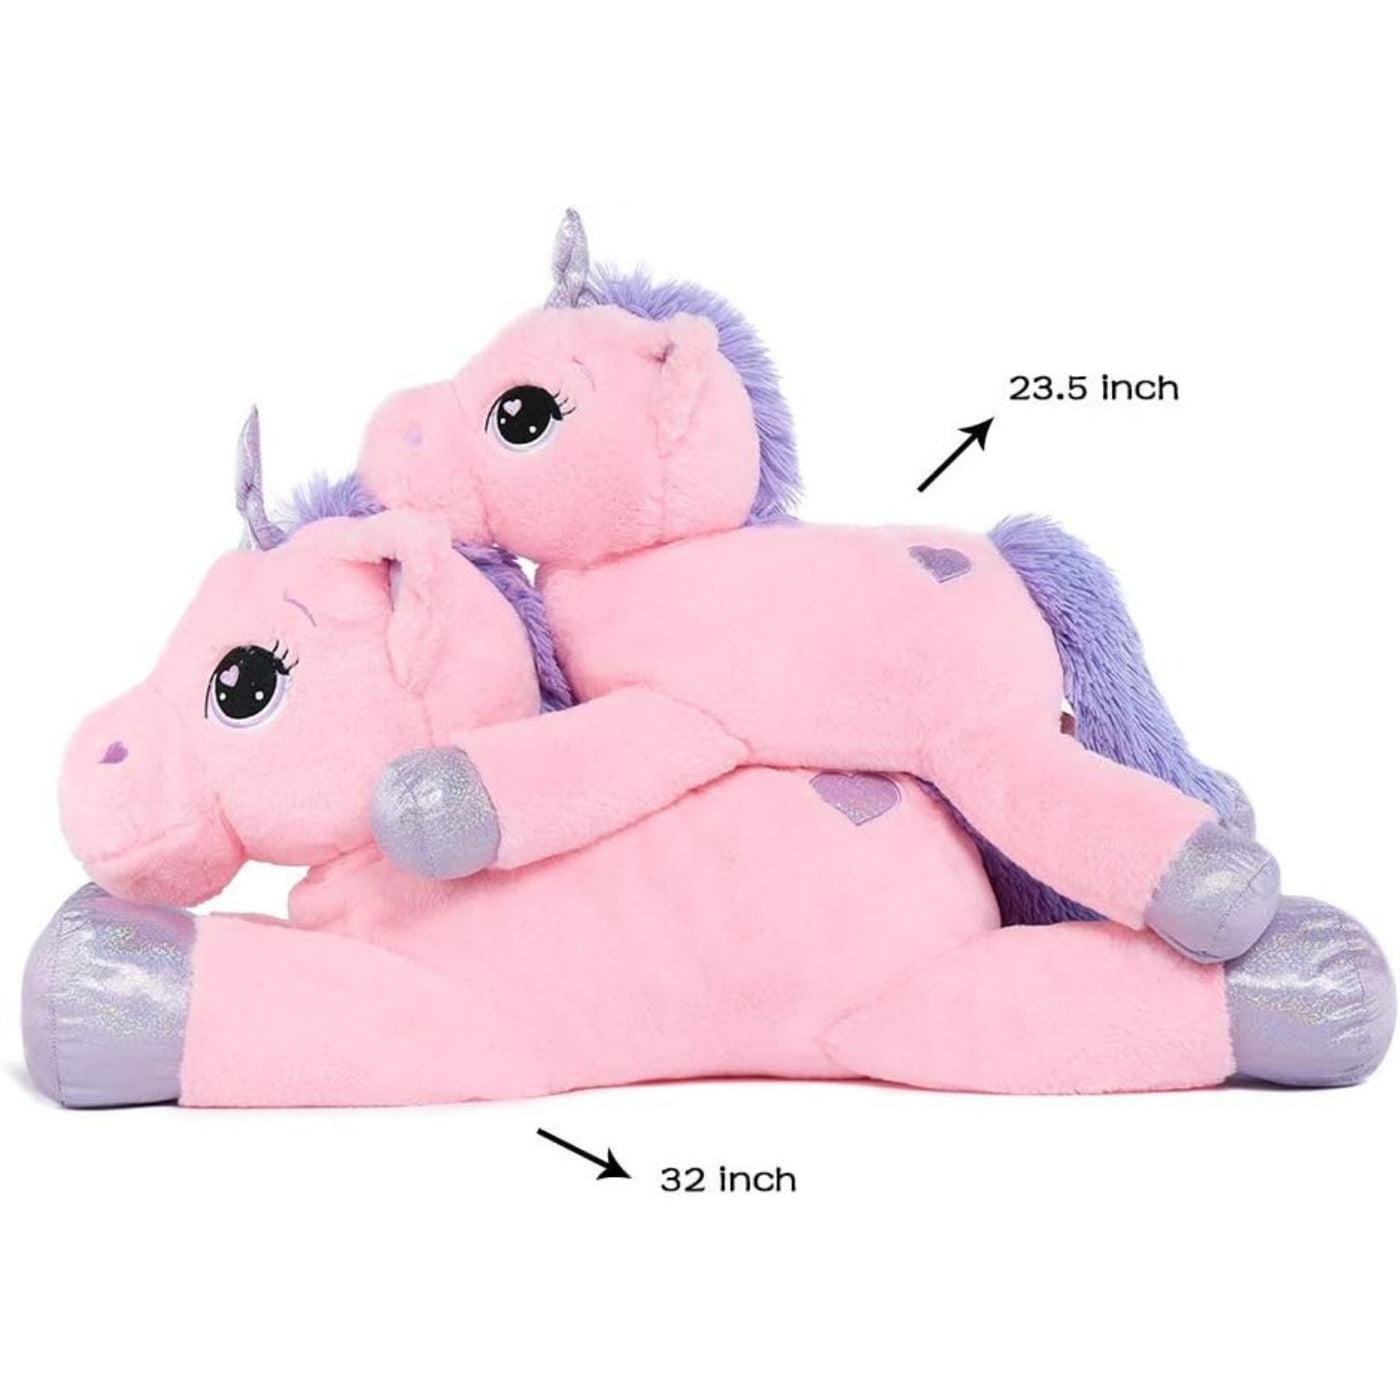 Giant Unicorn Plush Toy, Pink/White, 24/32 Inches - MorisMos Plush Toys